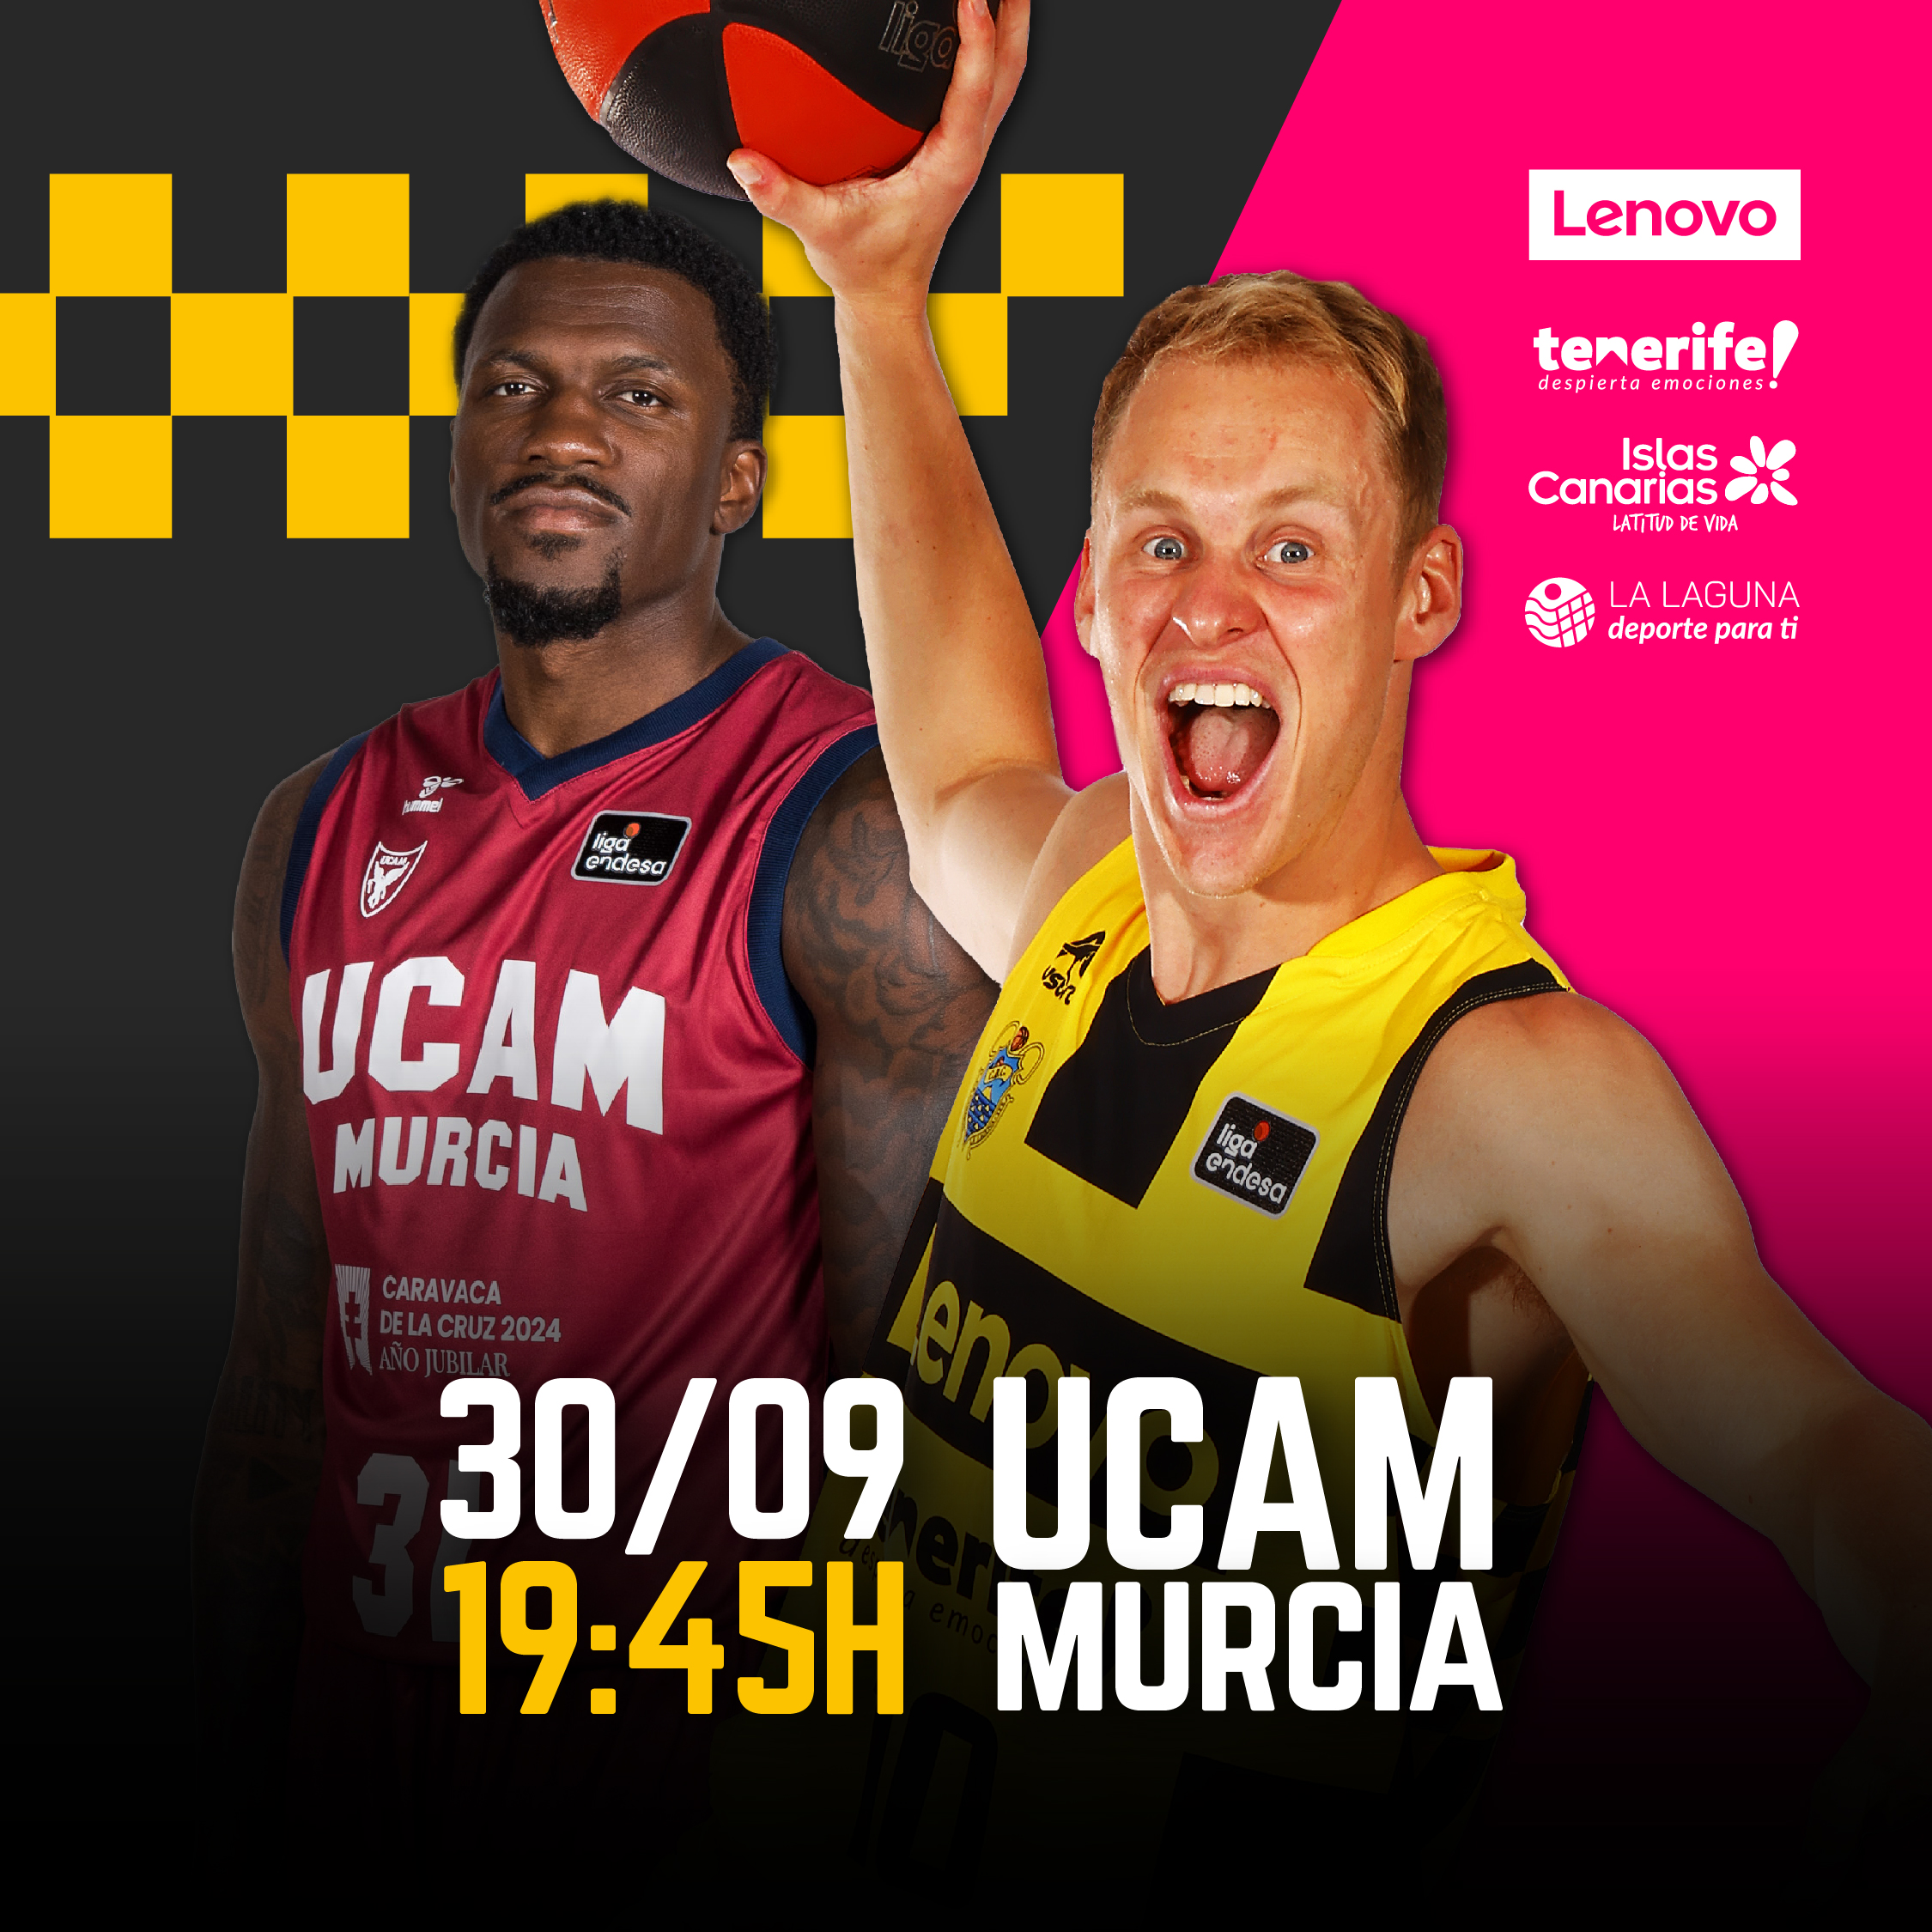 Previa del UCAM Murcia – Lenovo Tenerife (Jª. 3 – Liga Endesa)